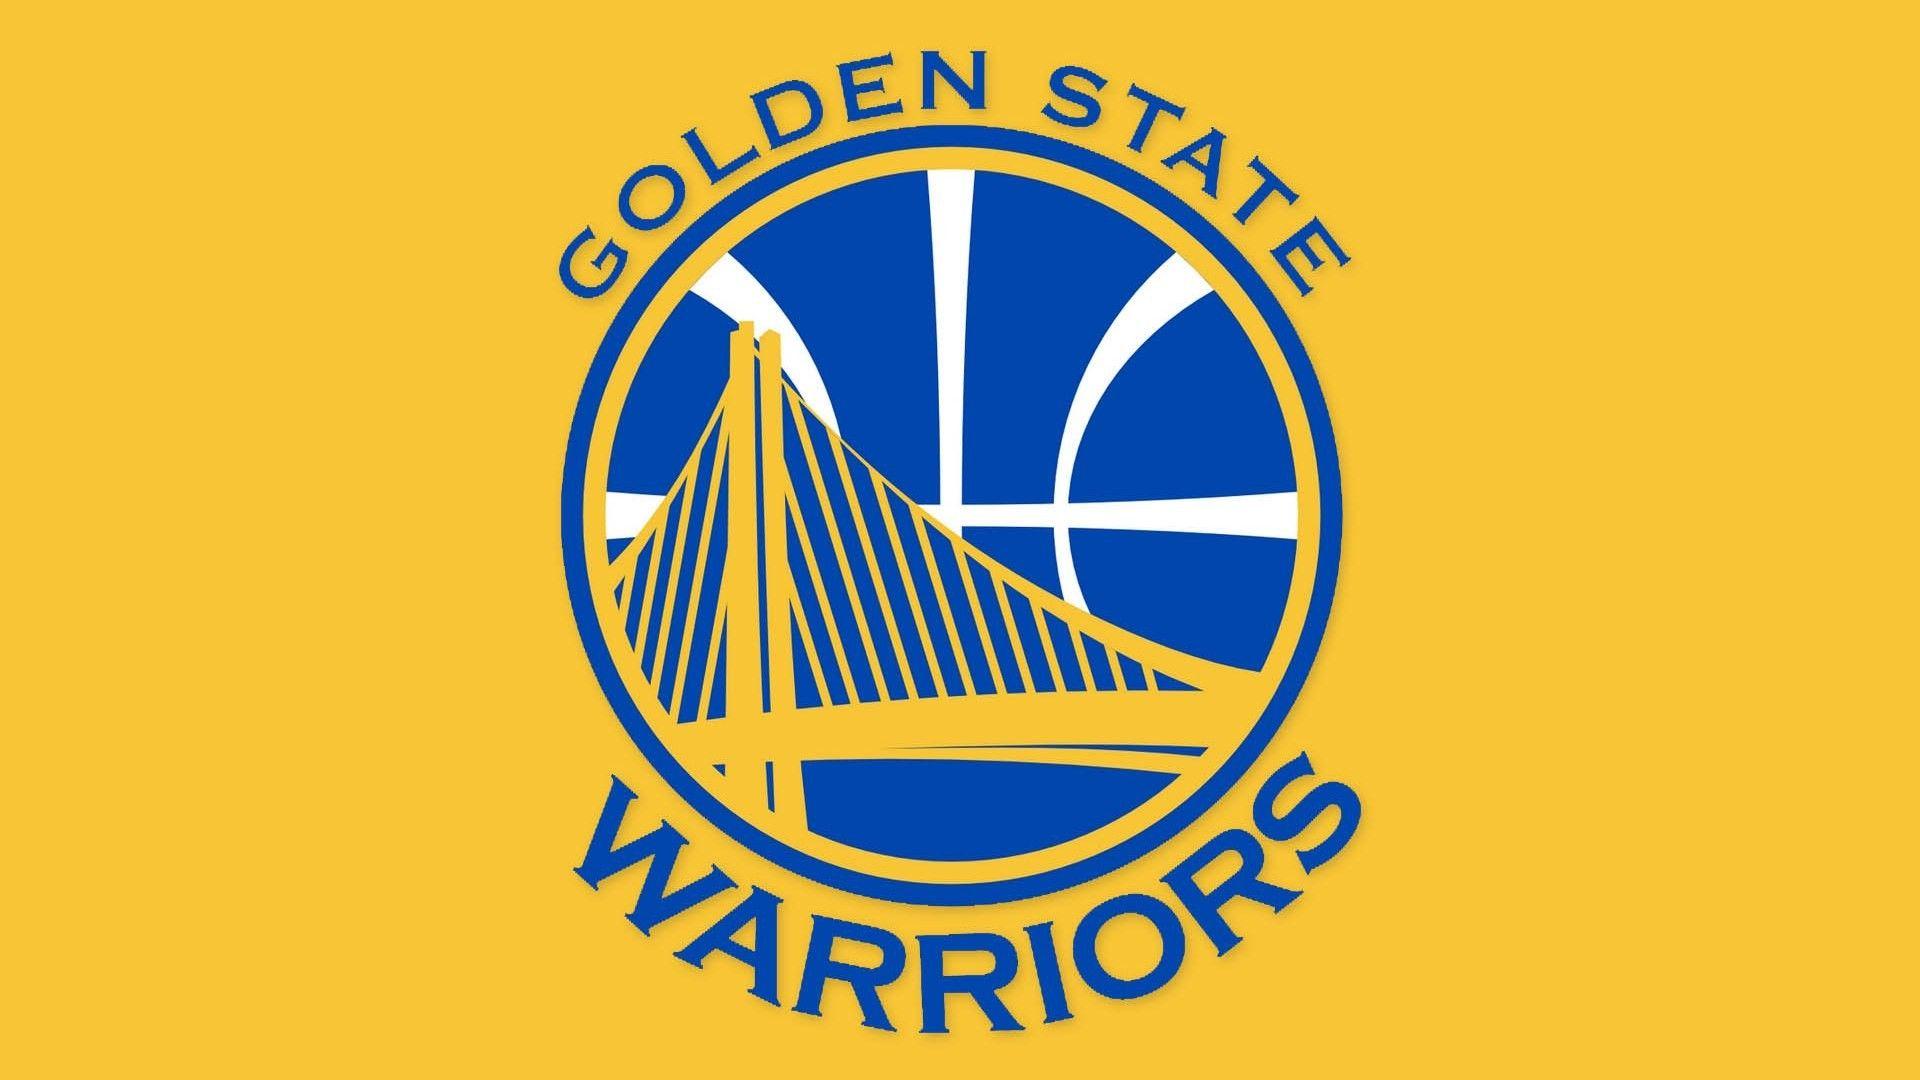 Worriors Logo - Golden State Warriors Logo Wallpaper Basketball Wallpaper